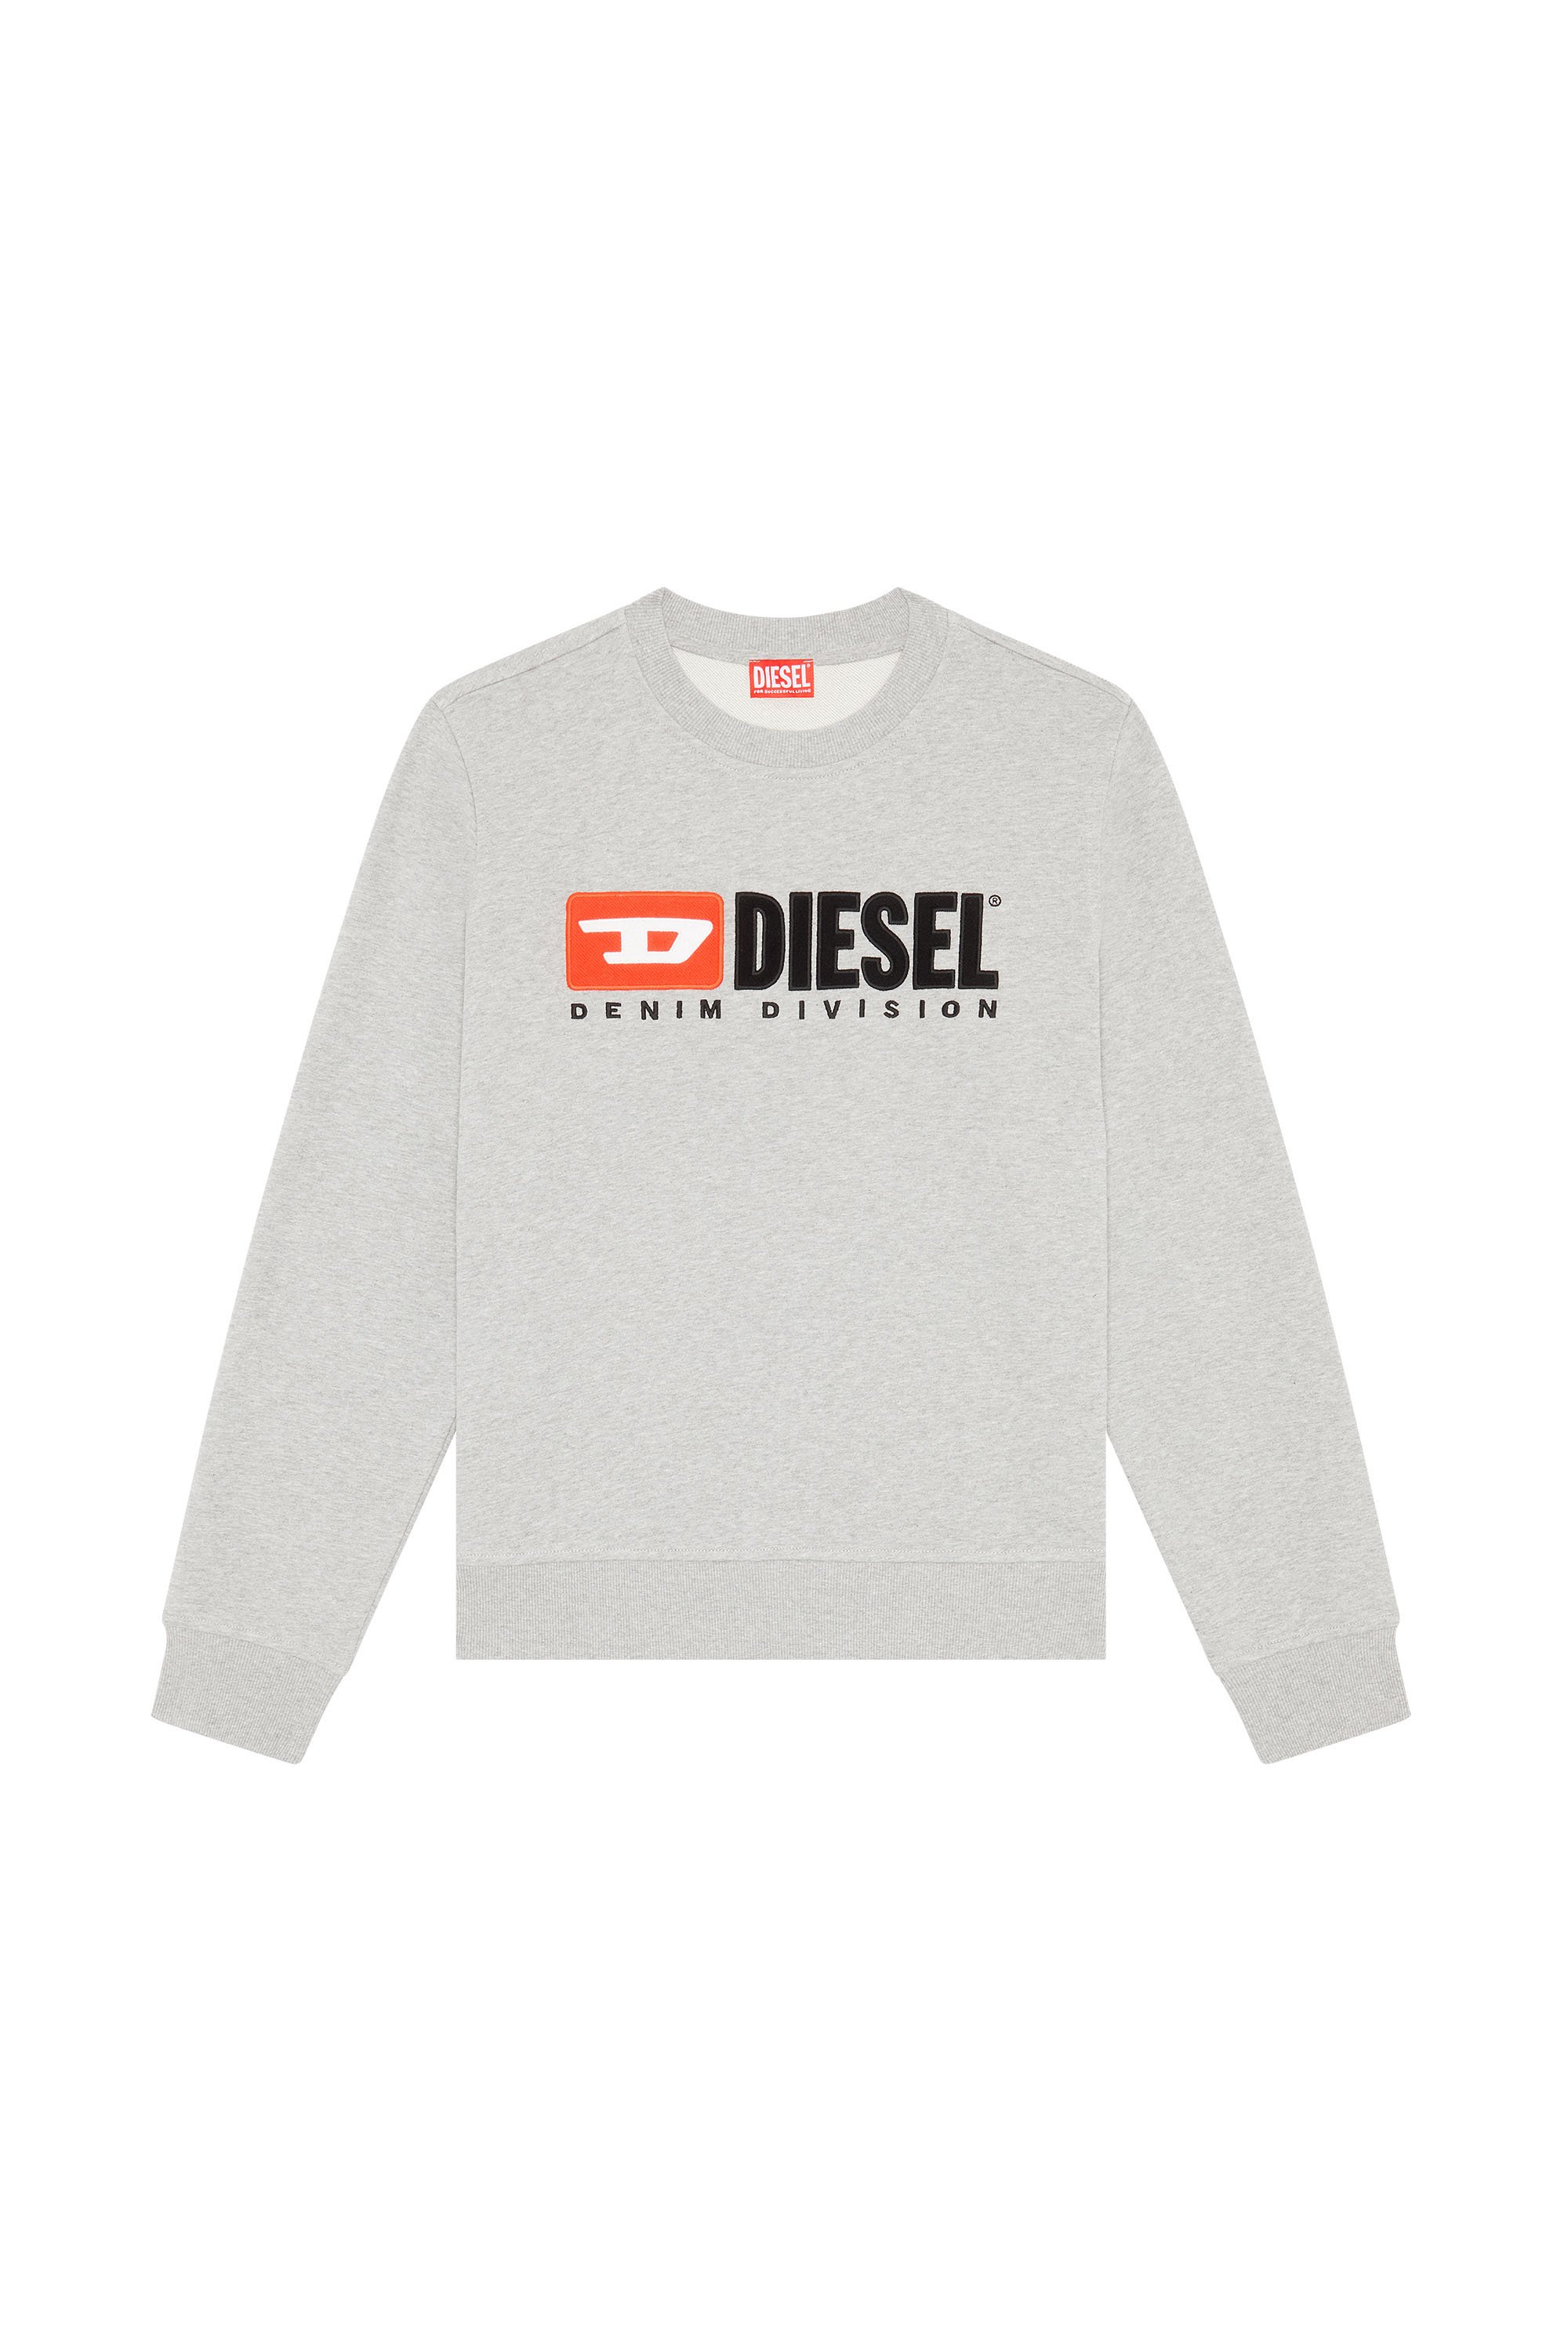 Diesel - S-GINN-DIV, Grau - Image 3